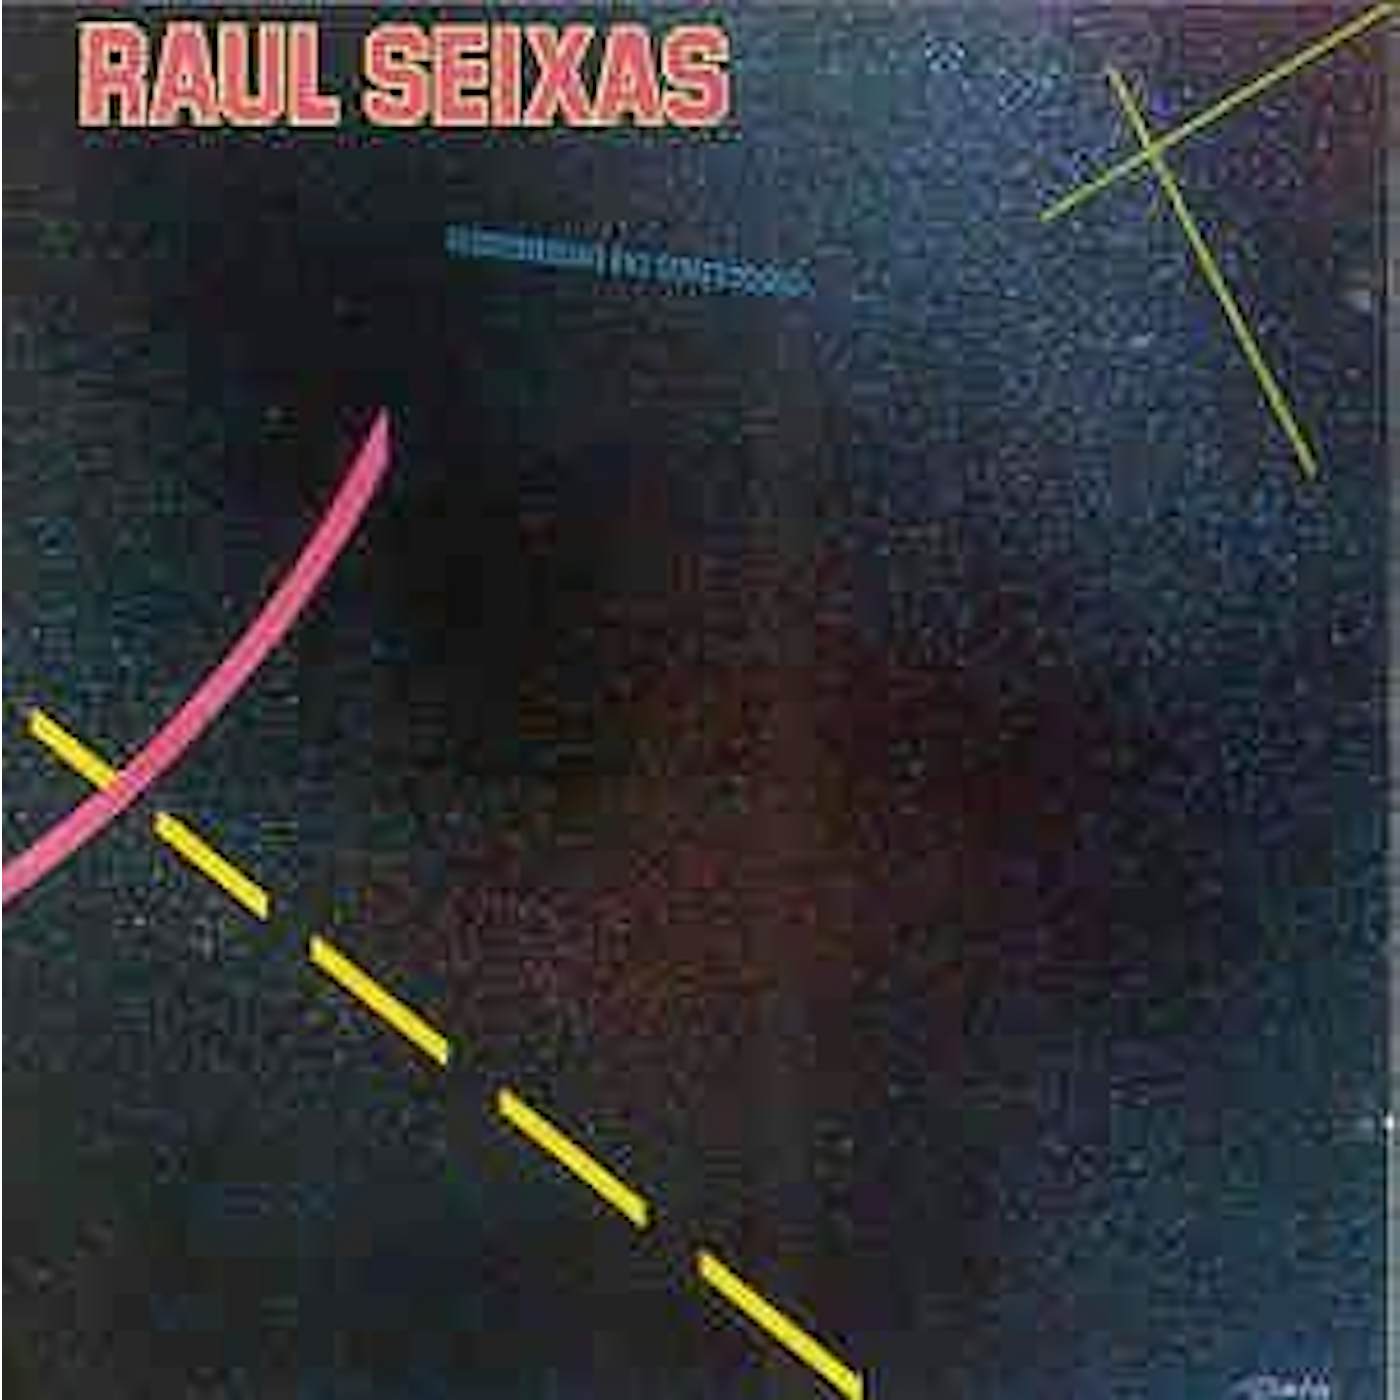 Raul Seixas SEGREDO DO UNIVERSO CD